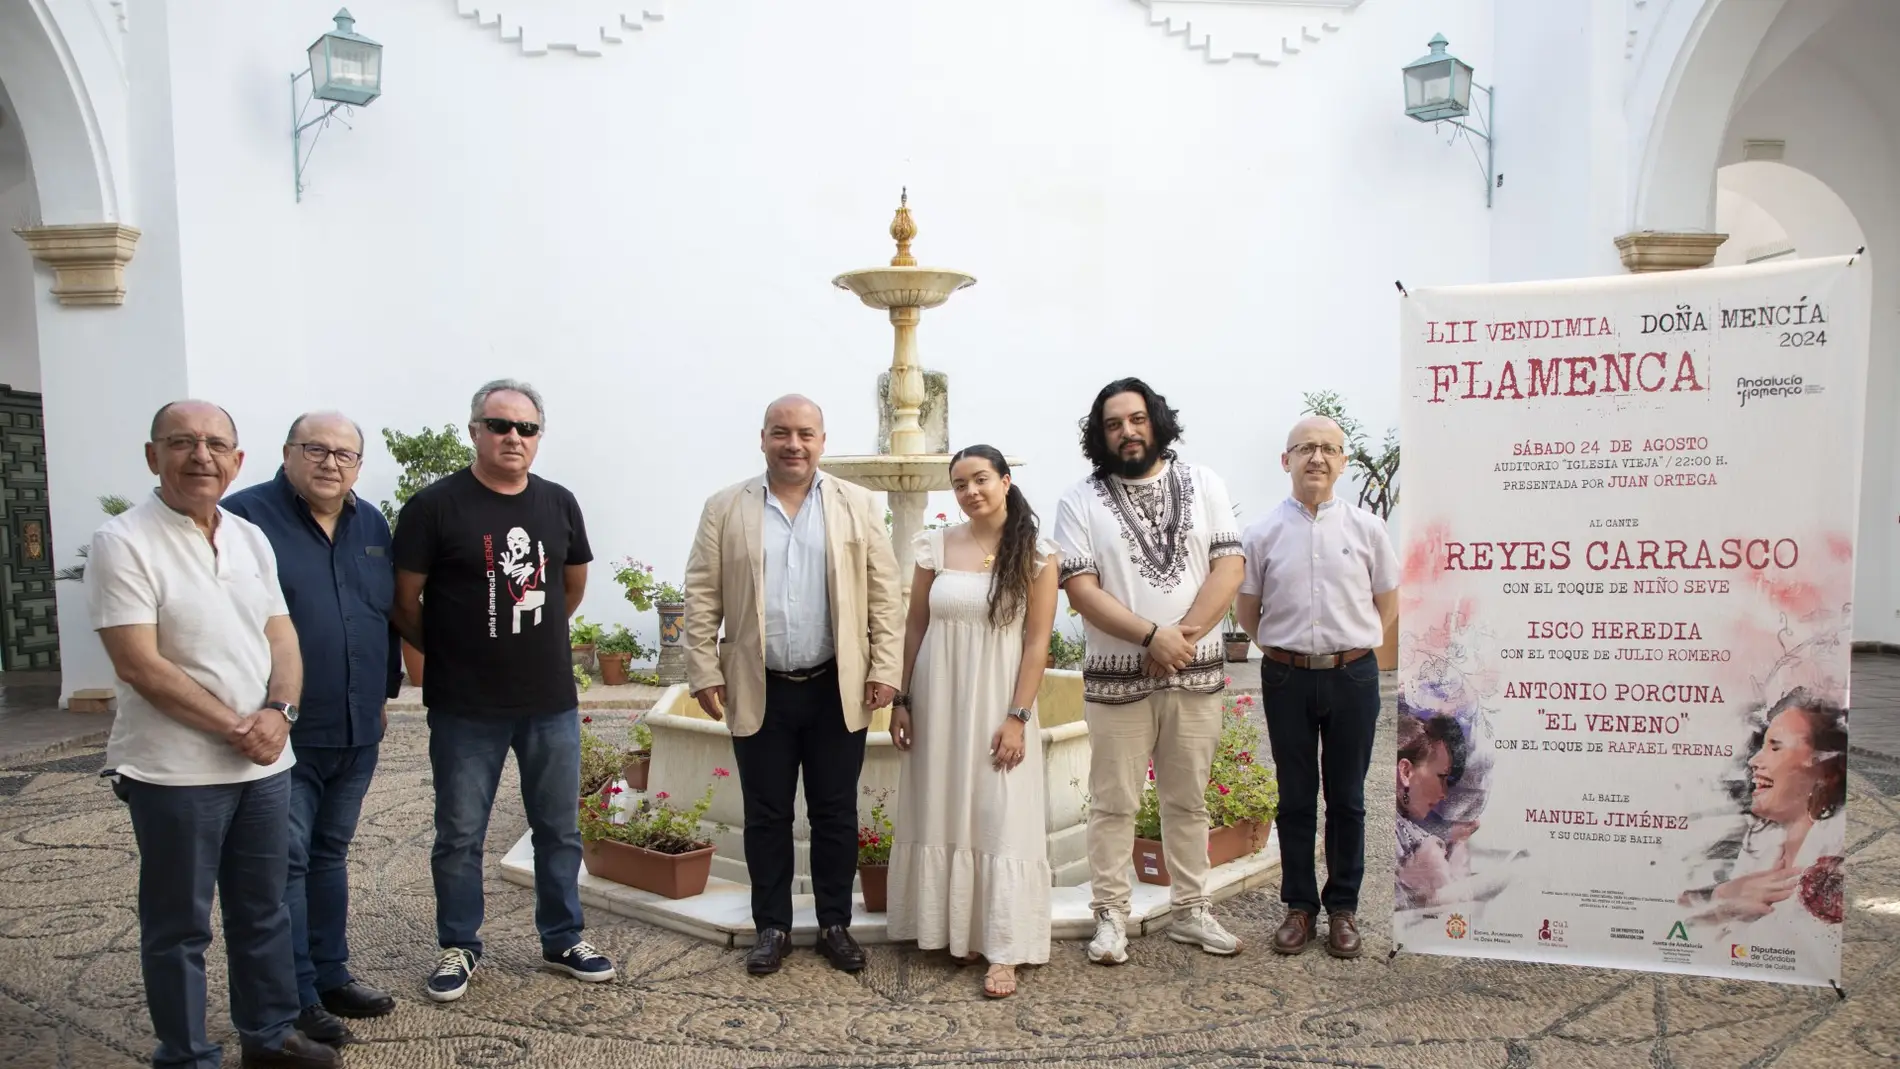 La LII Vendimia Flamenca de Doña Mencía contará con figuras del cante como Reyes Carrasco, Isco Heredia y Antonio Porcuna ‘El Veneno’